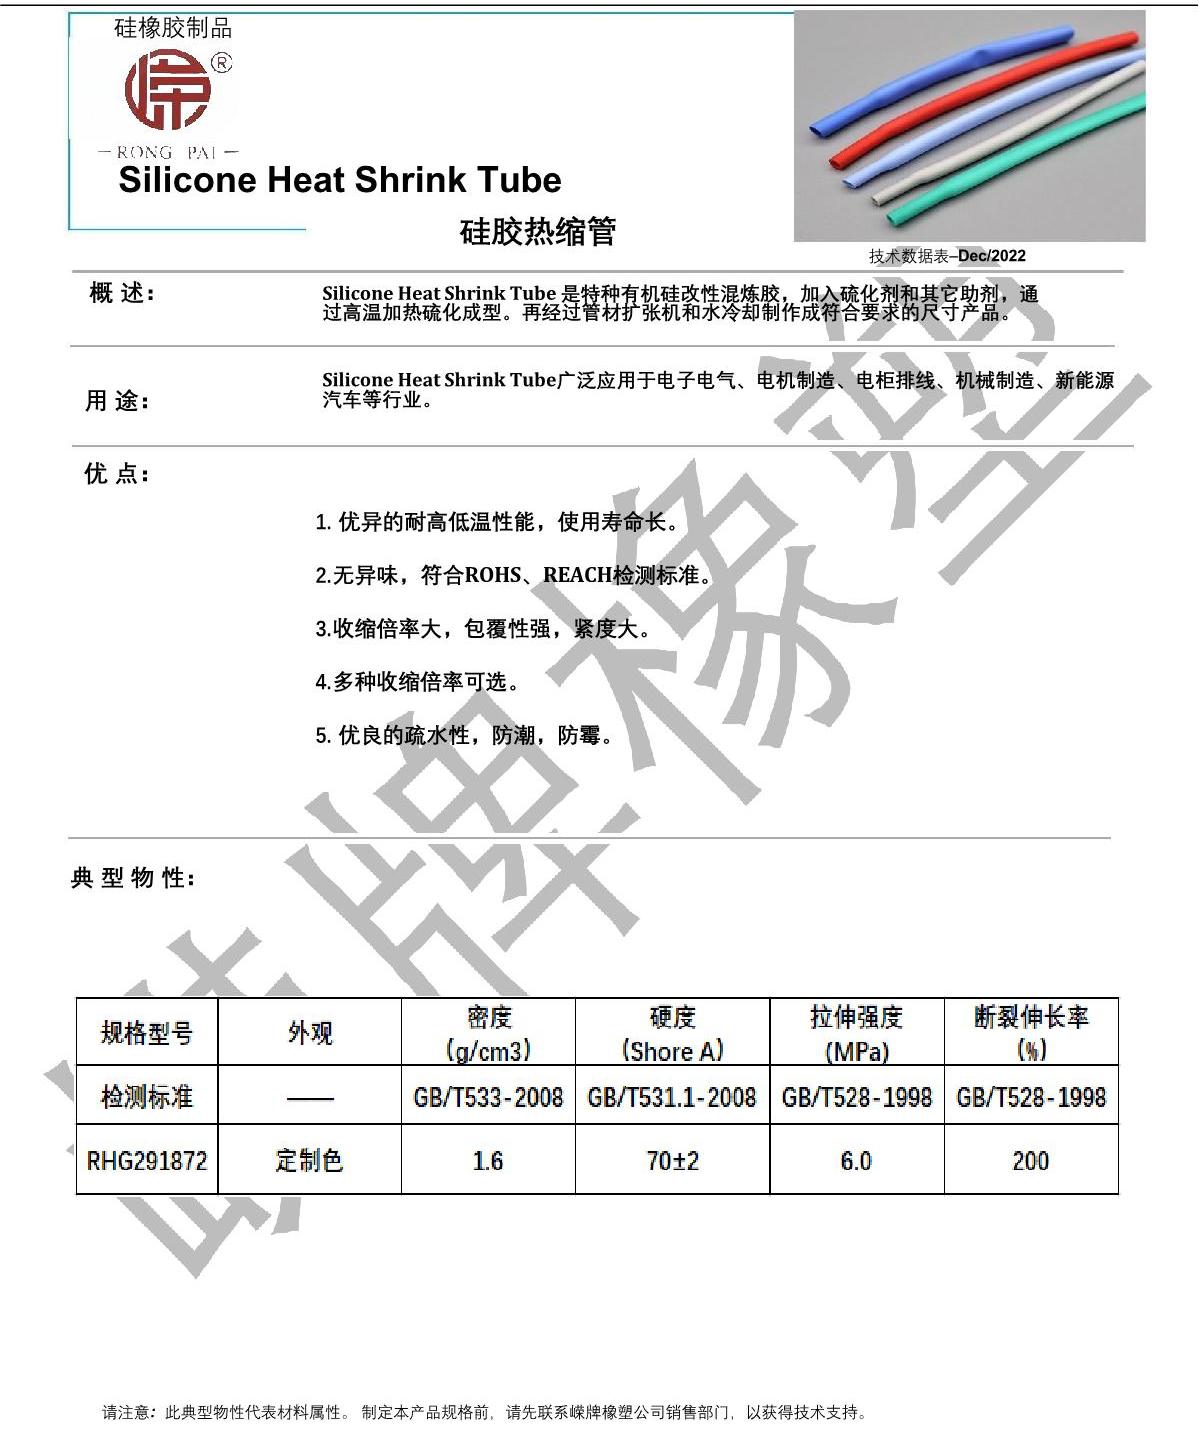 硅膠熱縮管產品說明_1.JPG